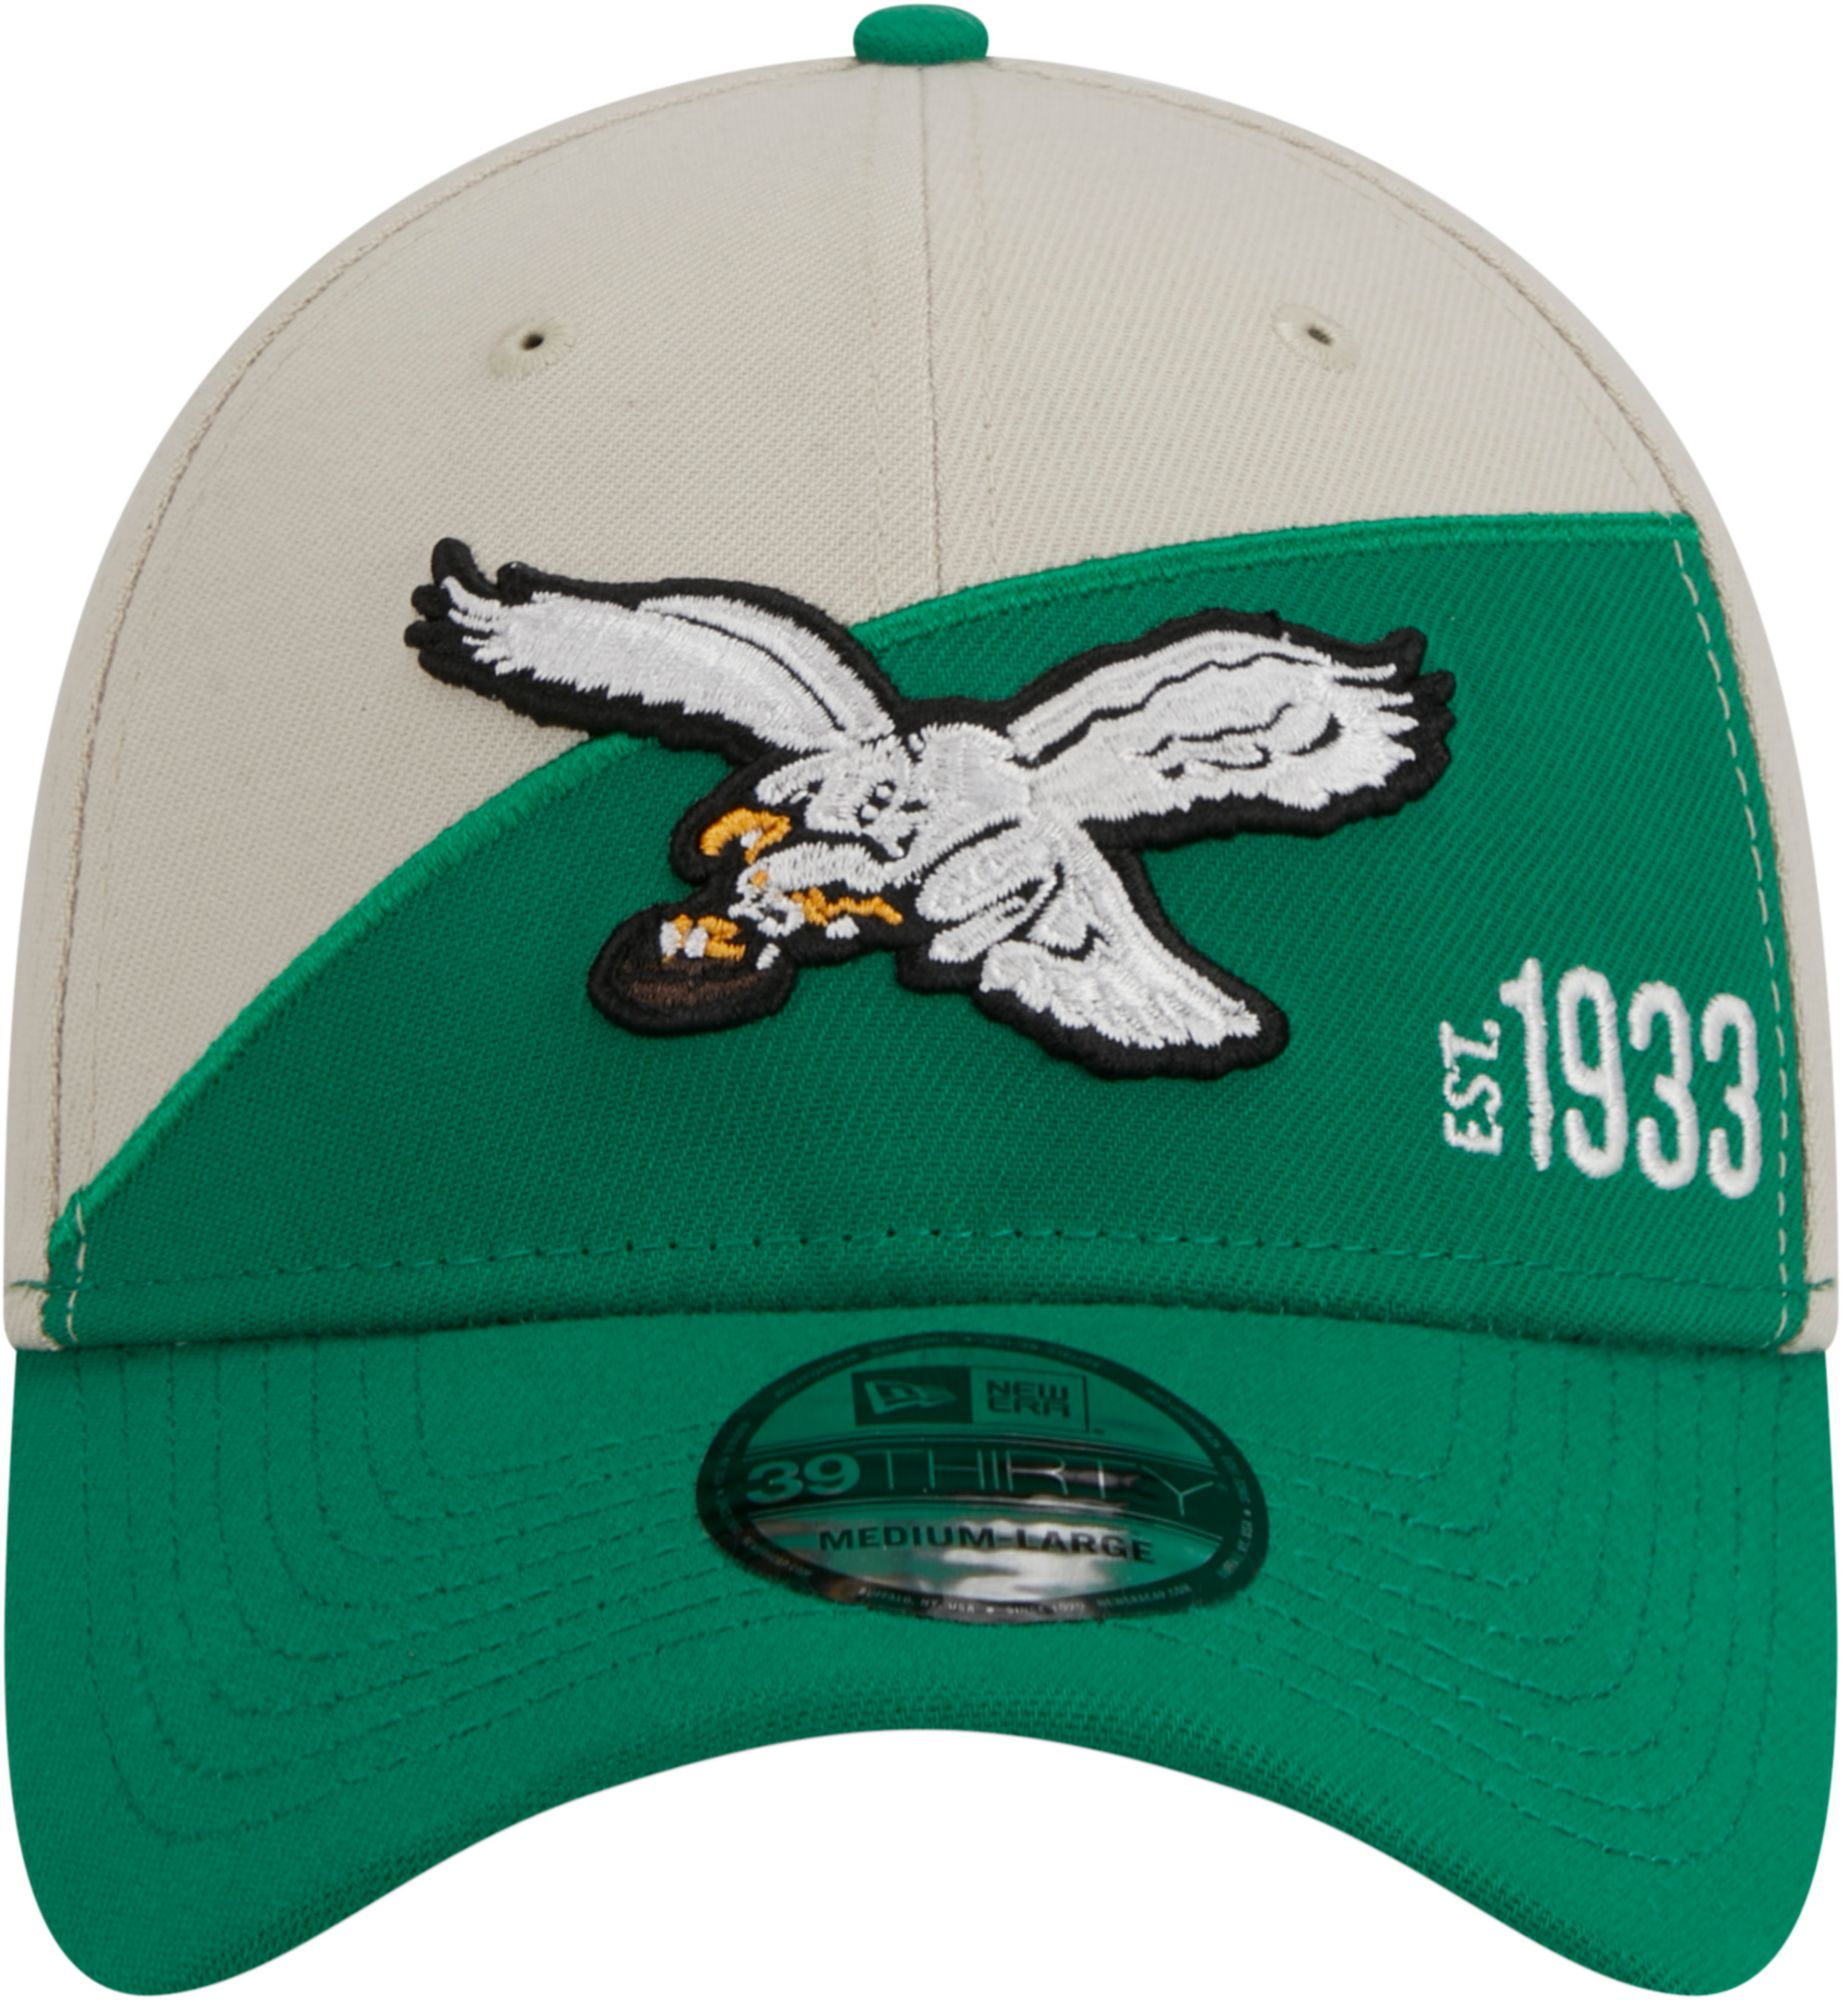 Eagles sideline cap